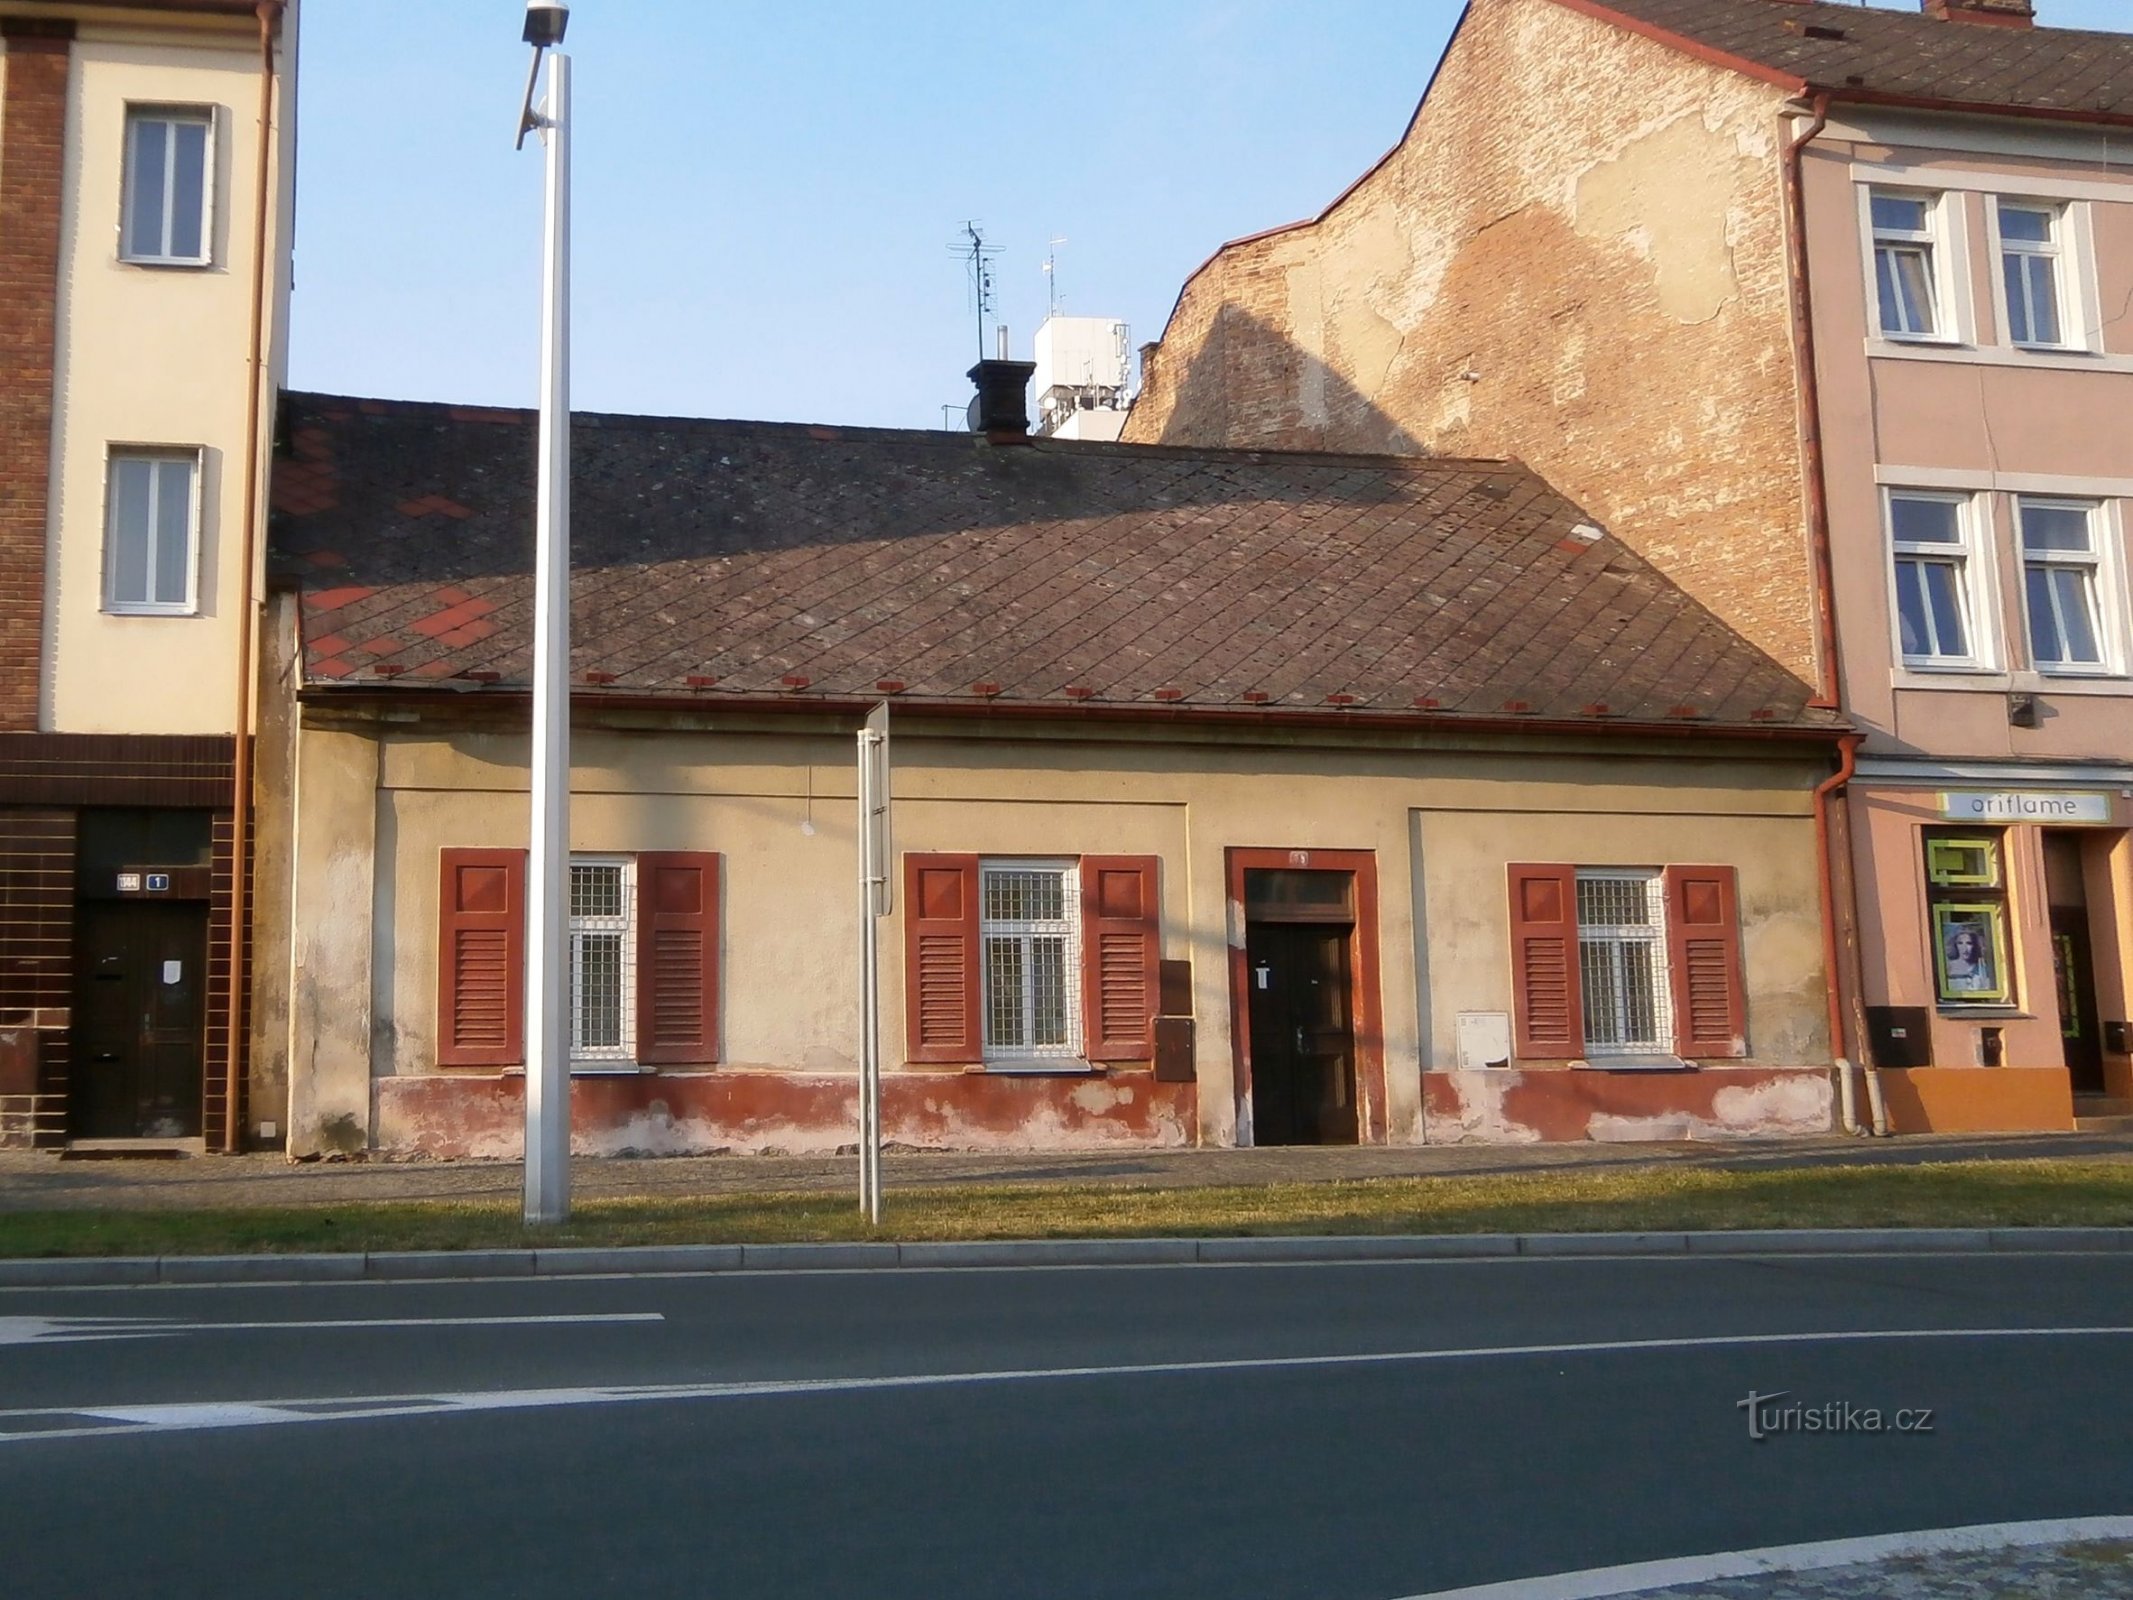 Σταθμός Νο. 78 (Hradec Králové, 27.7.2014/XNUMX/XNUMX)